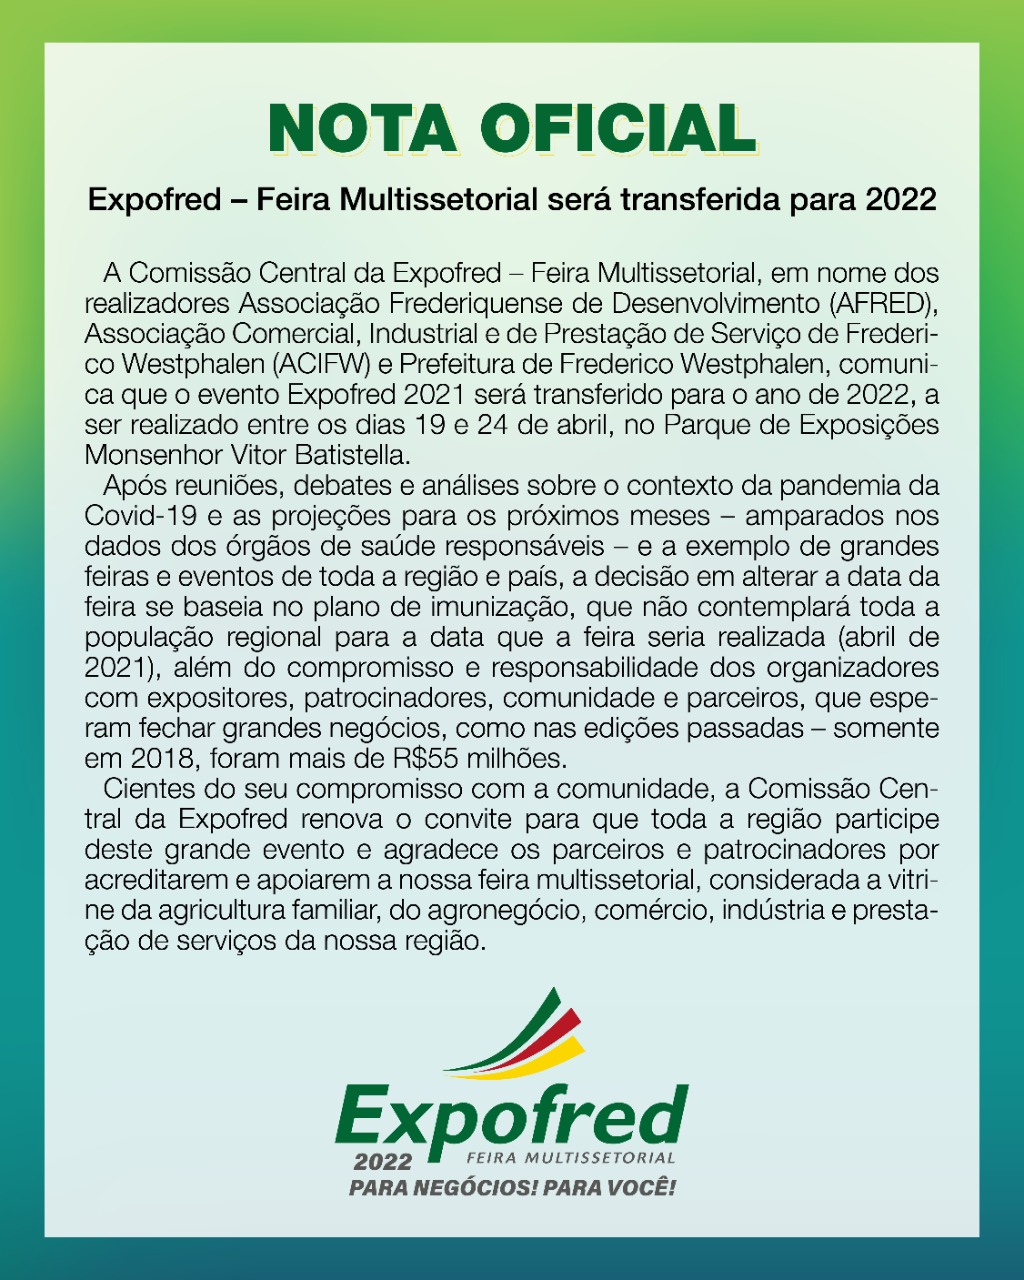 Expofred – Feira Multissetorial será transferida para 2022